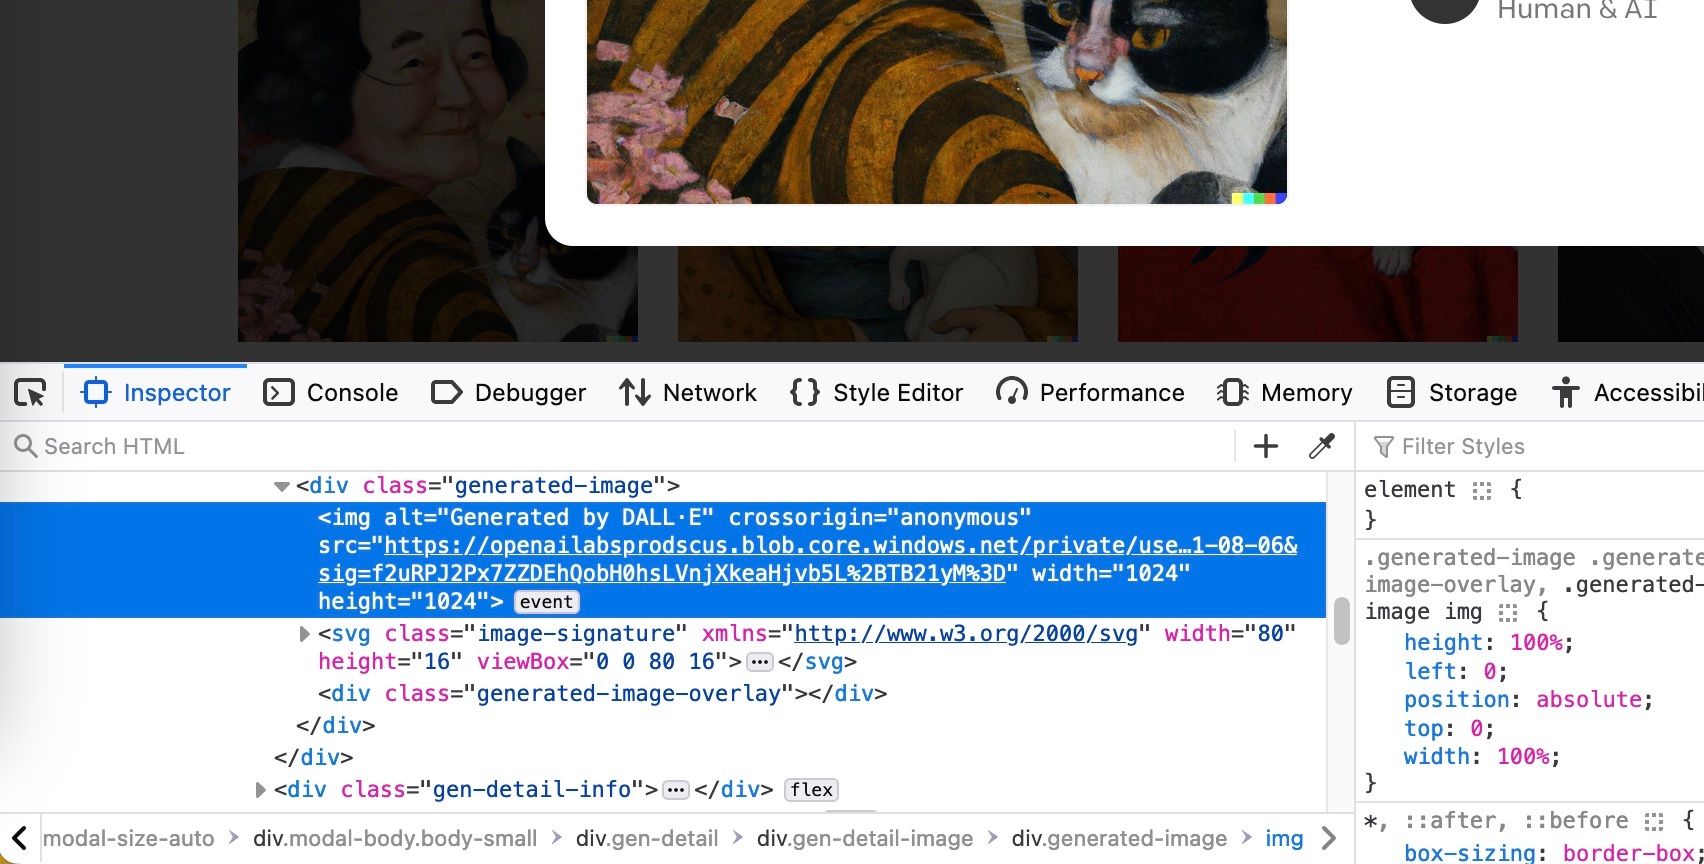 Fenêtre de l'inspecteur Firefox affichant un lien vers l'image générée par Dall-E